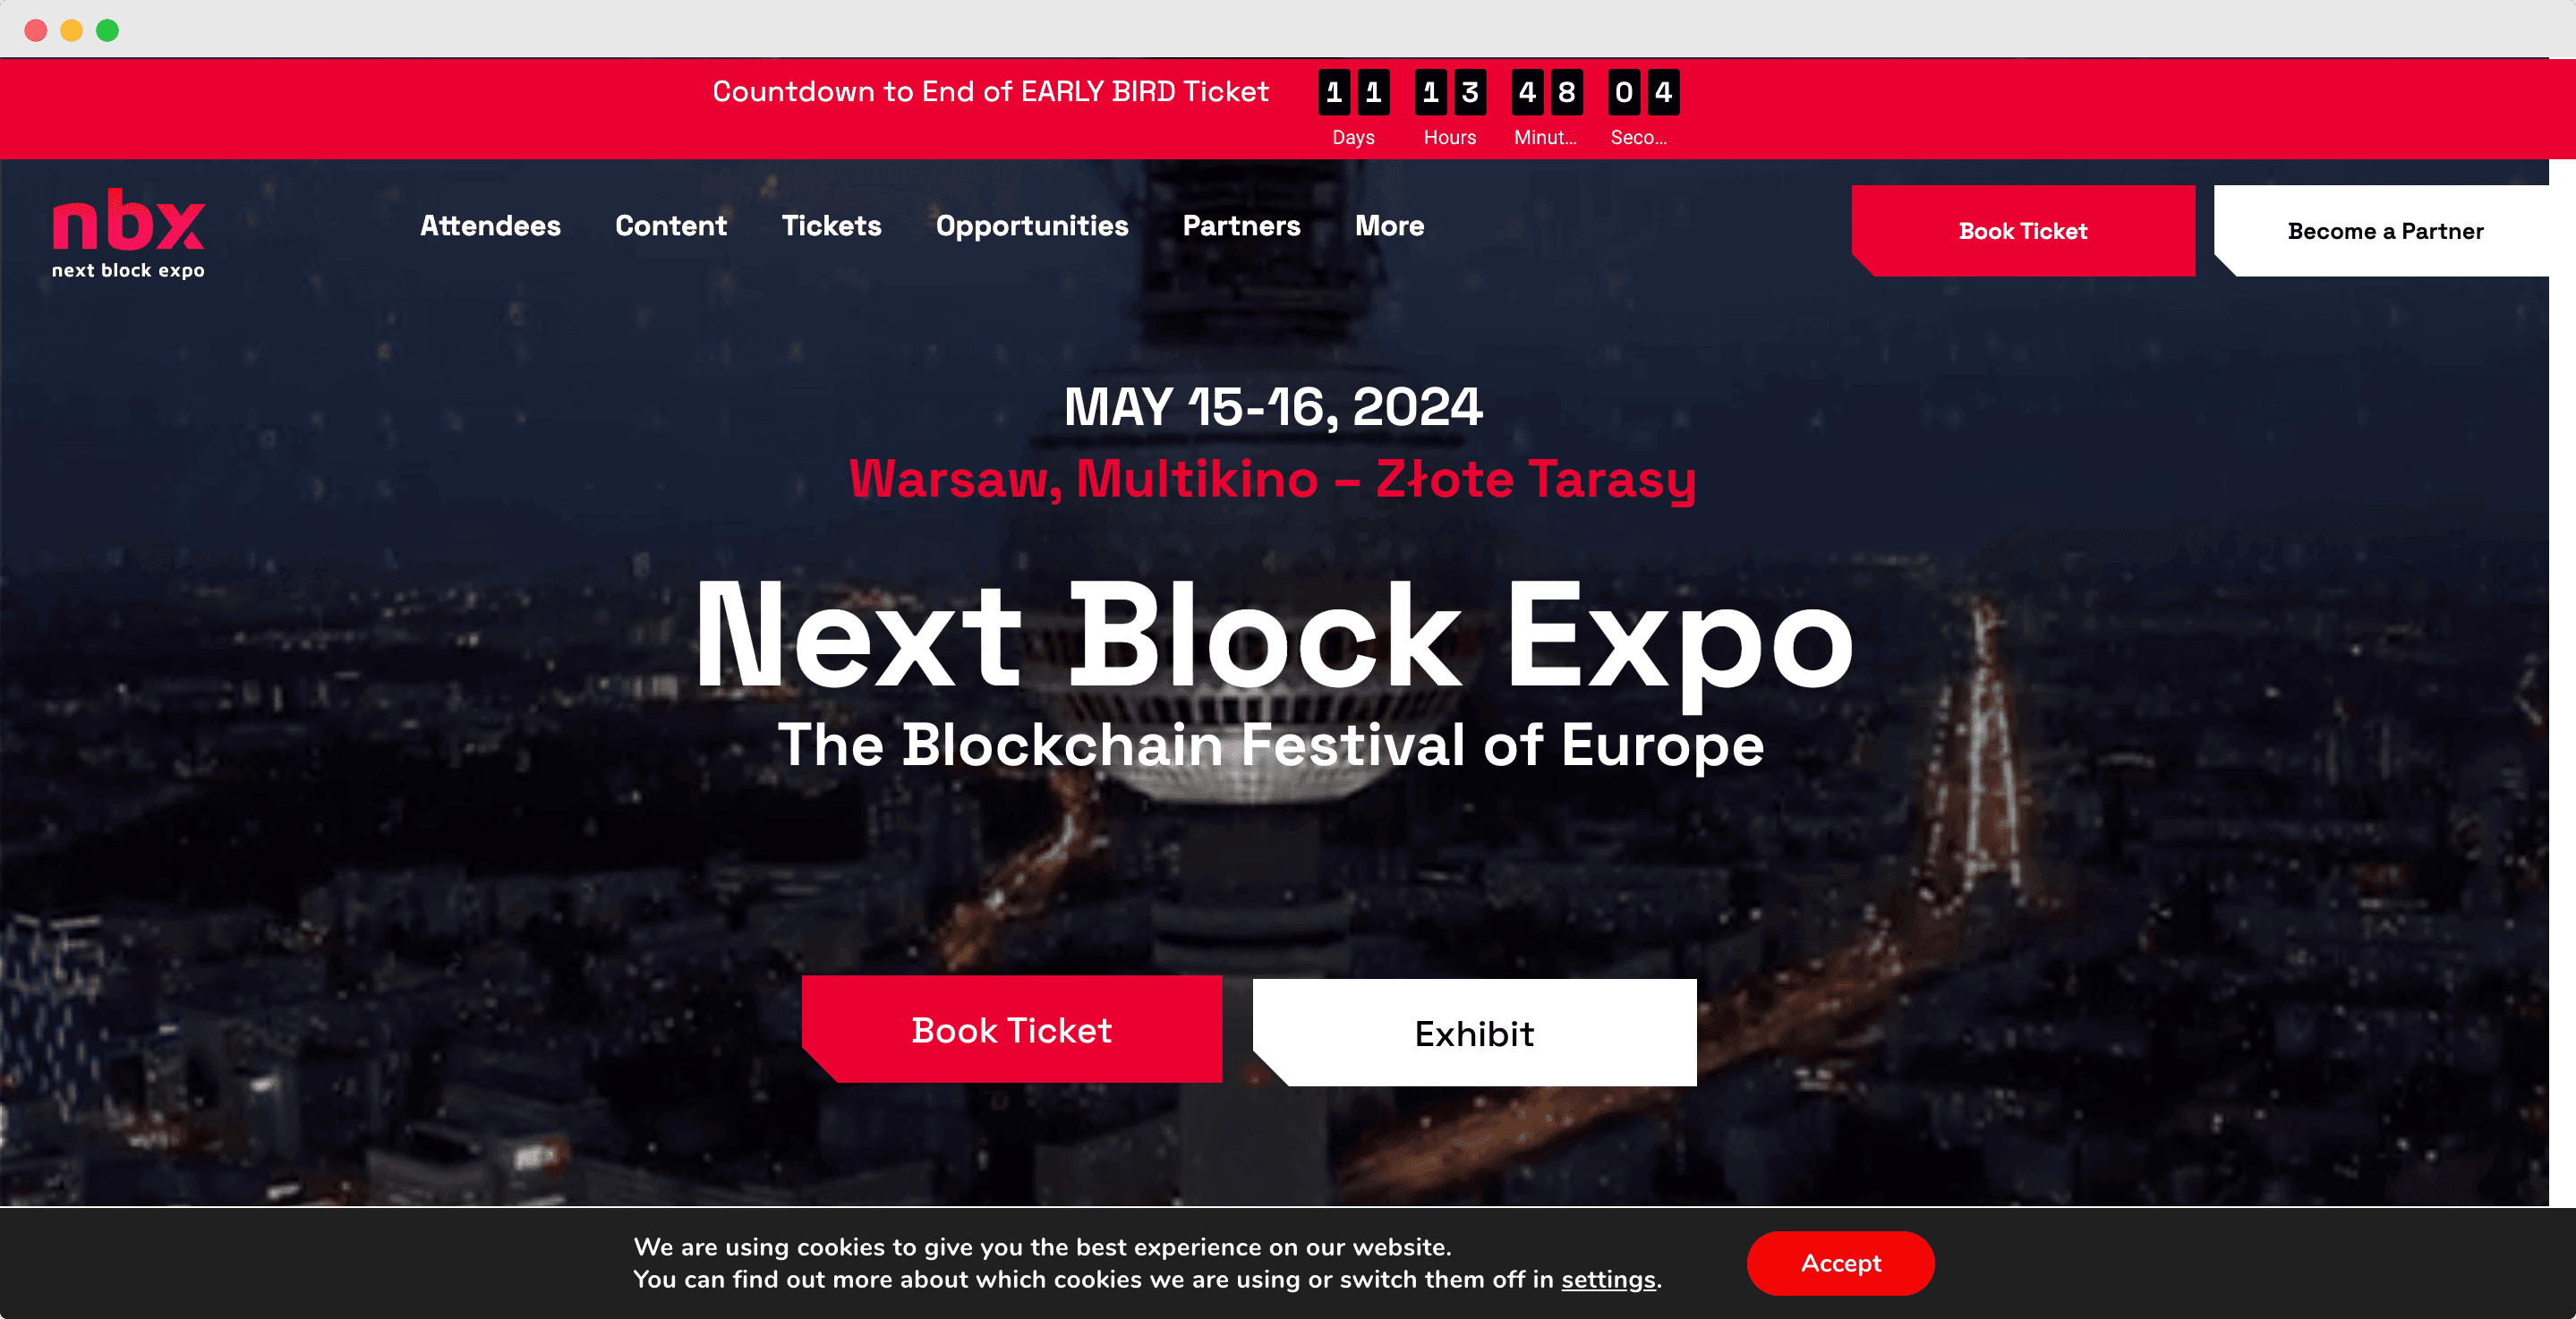 Next Block Expo